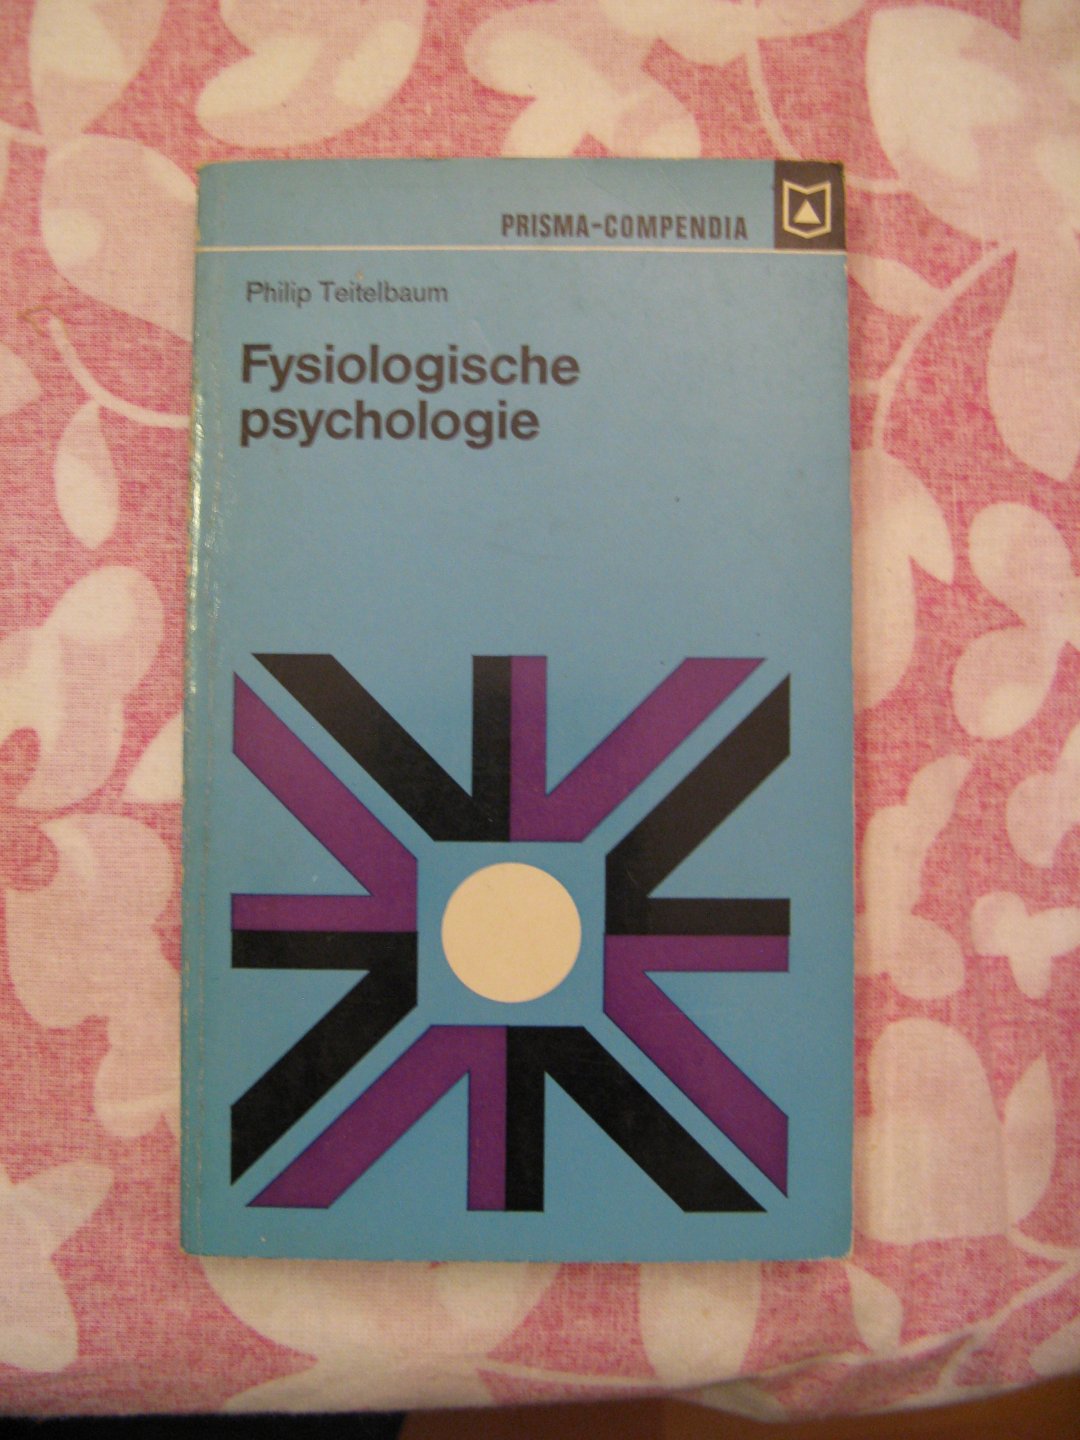 philip teitelbaum - fysiologische psychologie